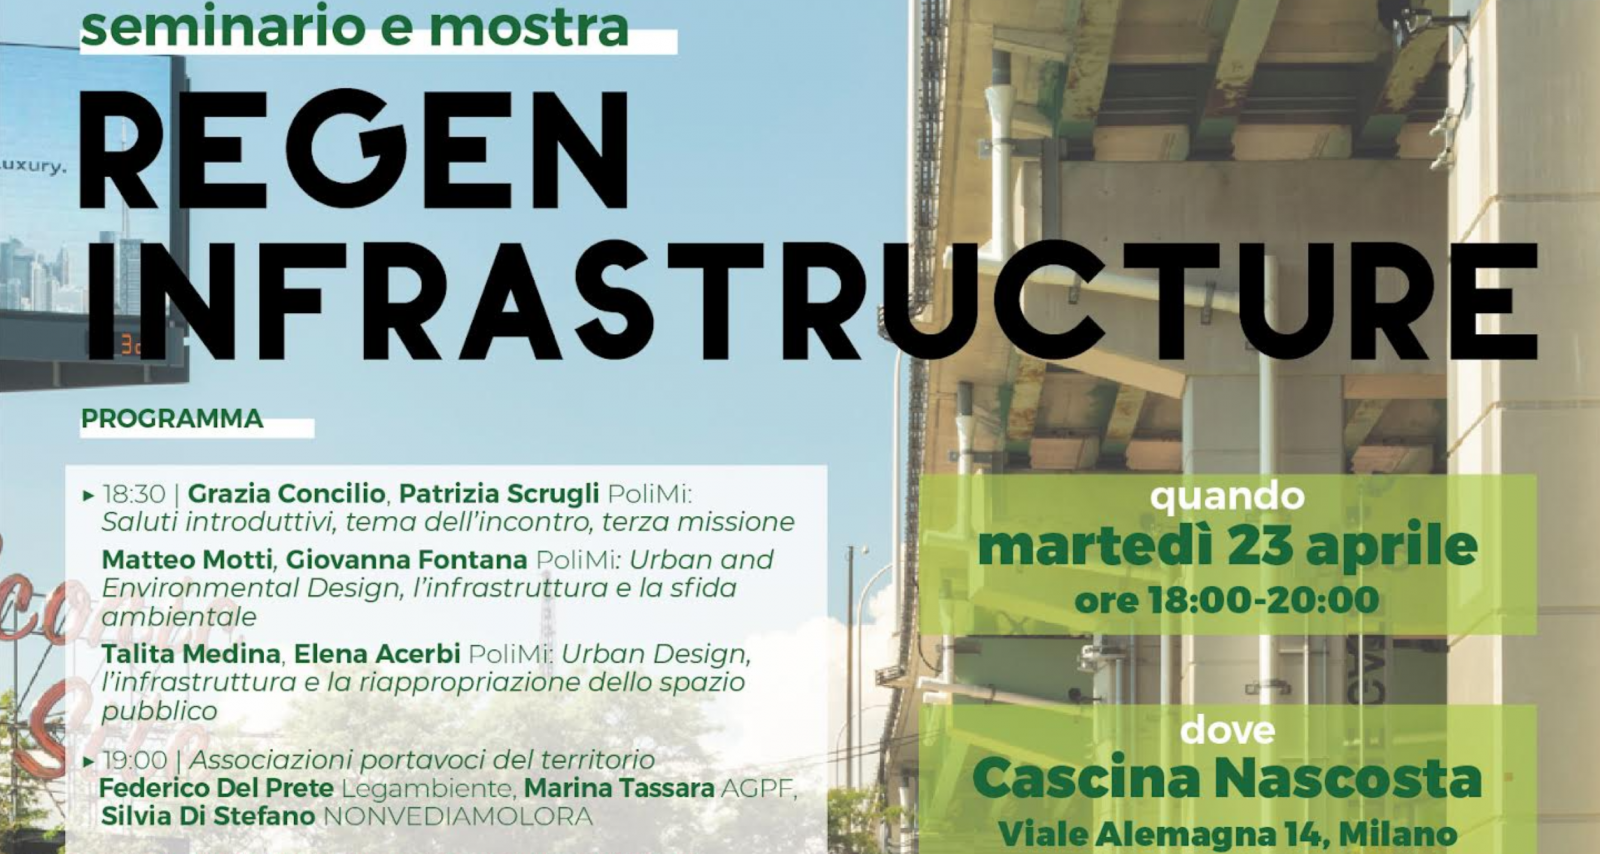 Regen Infrastructure: Seminar and Exhibition in Milan